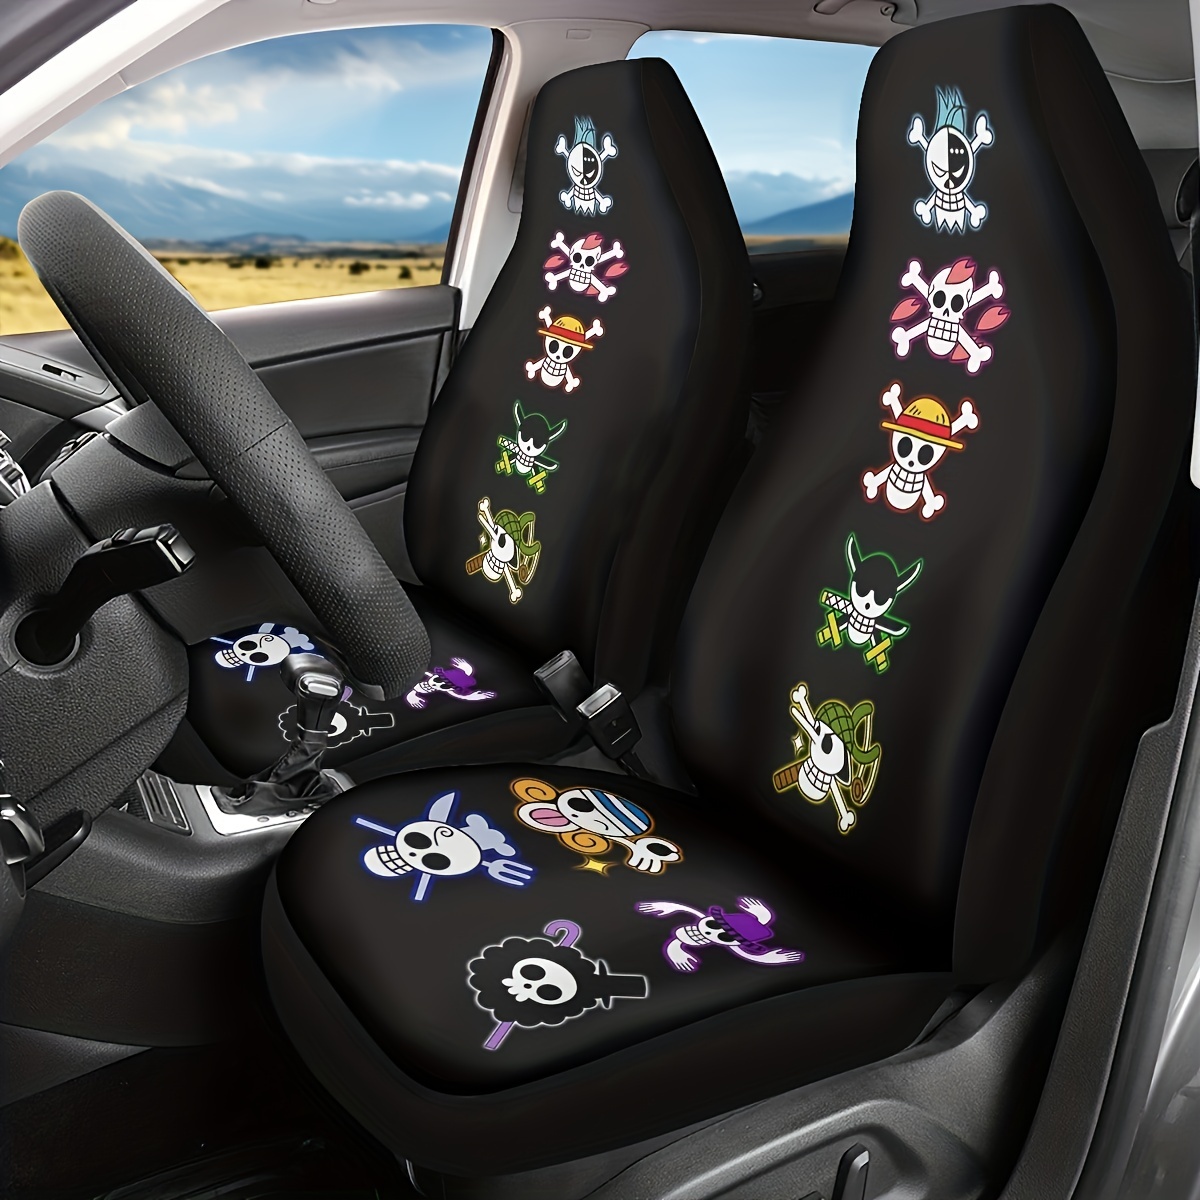 Housses de siège de voiture avec ceinture de sécurité intégrée